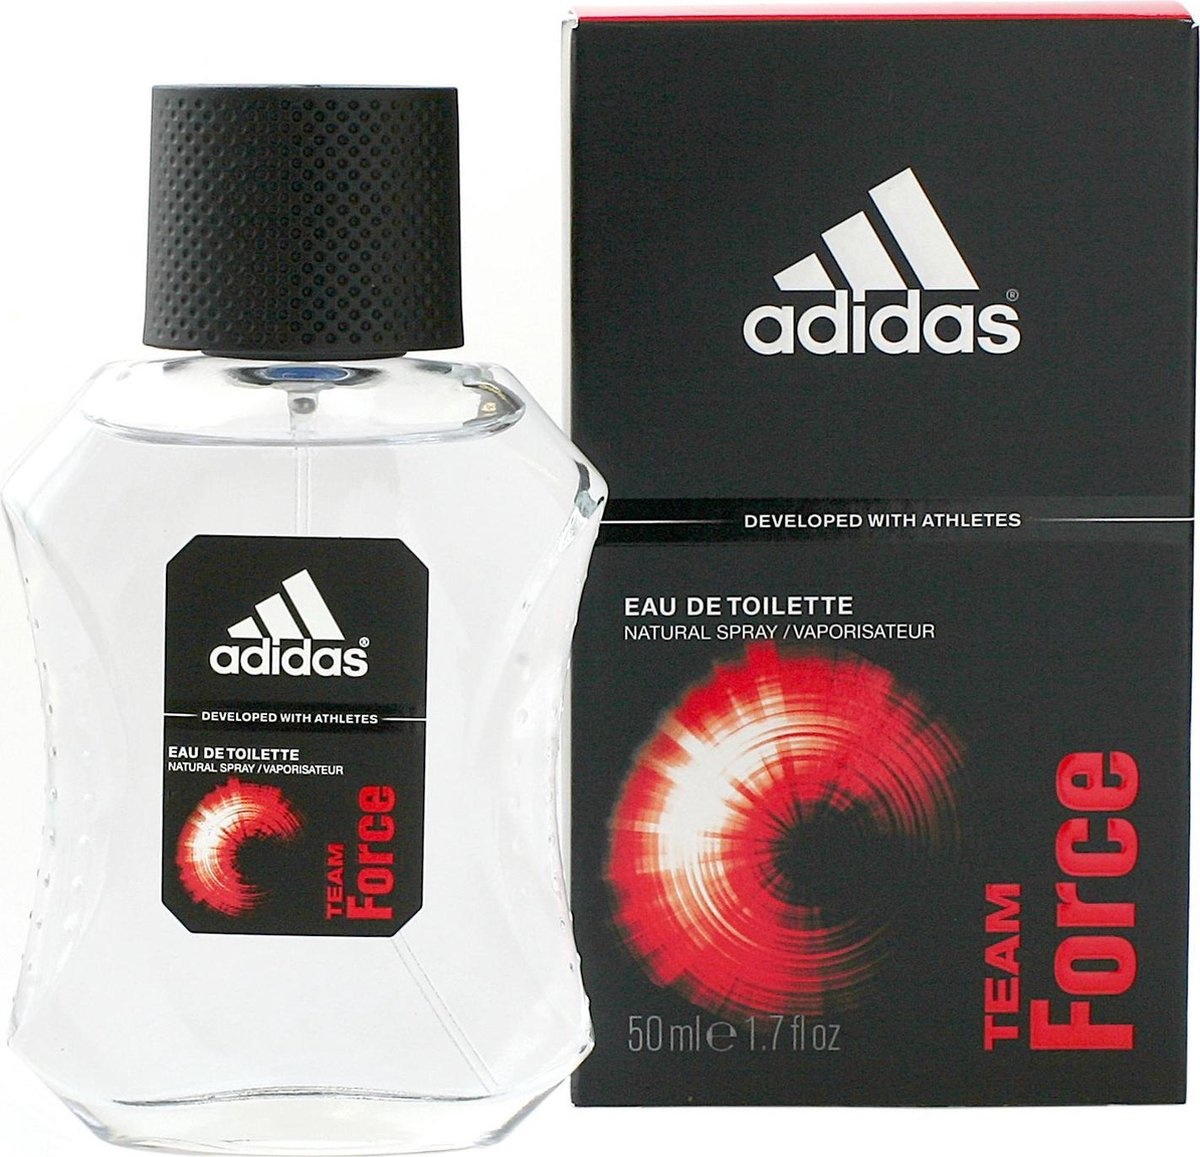 Adidas Team Force for Men - 50 ml - Eau de toilette - Packaging damaged